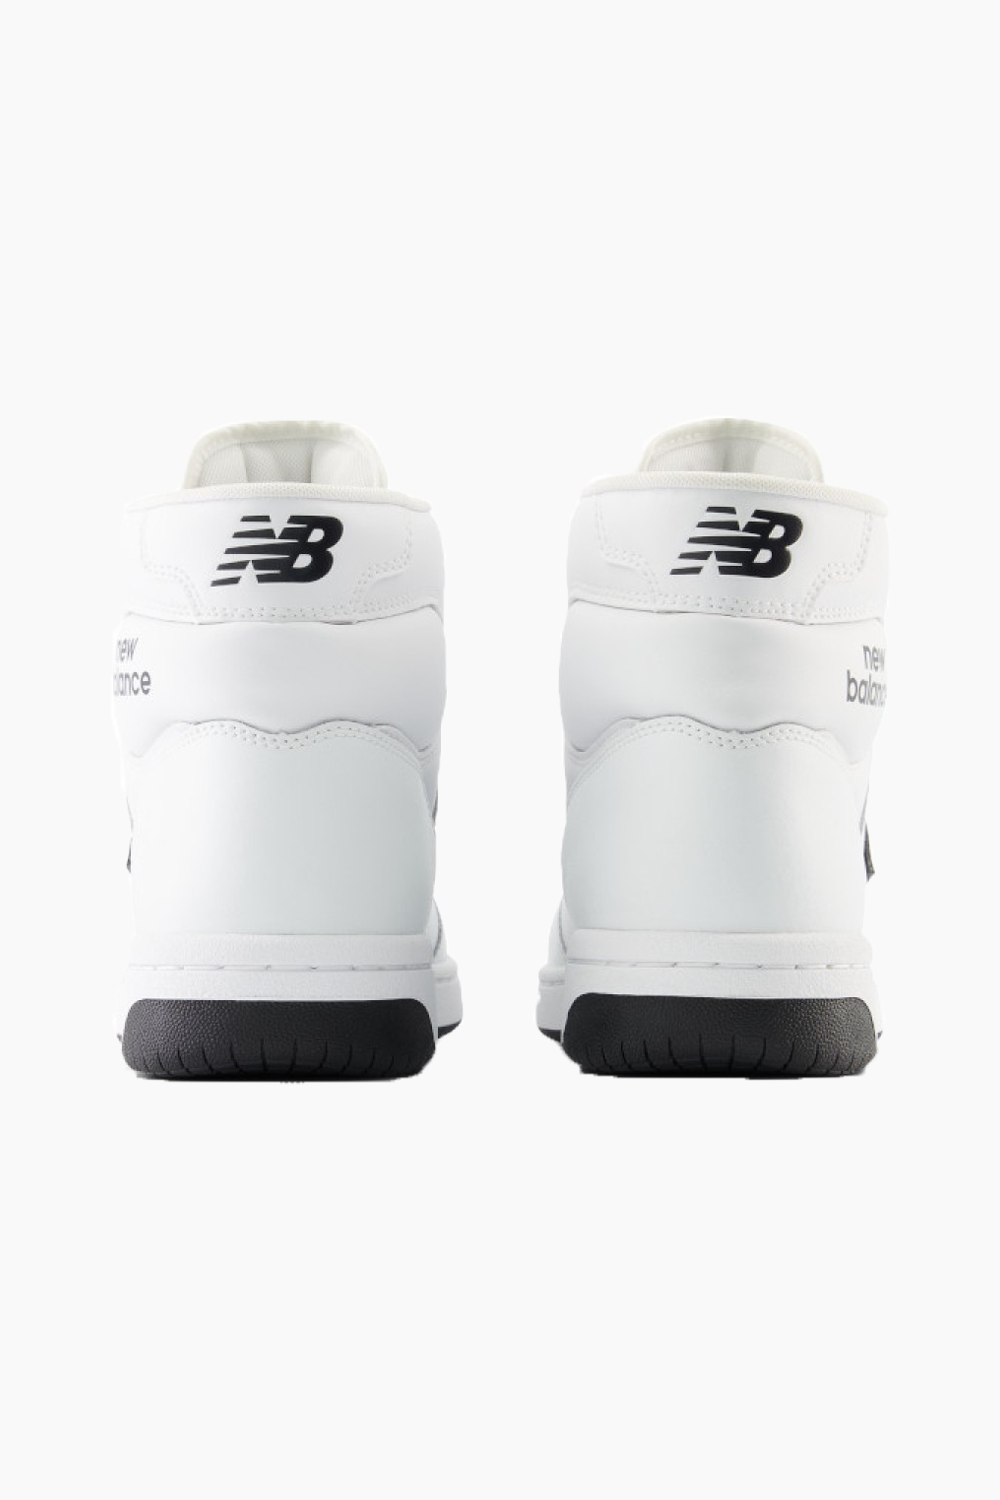 BB480COA- White/Black - New Balance